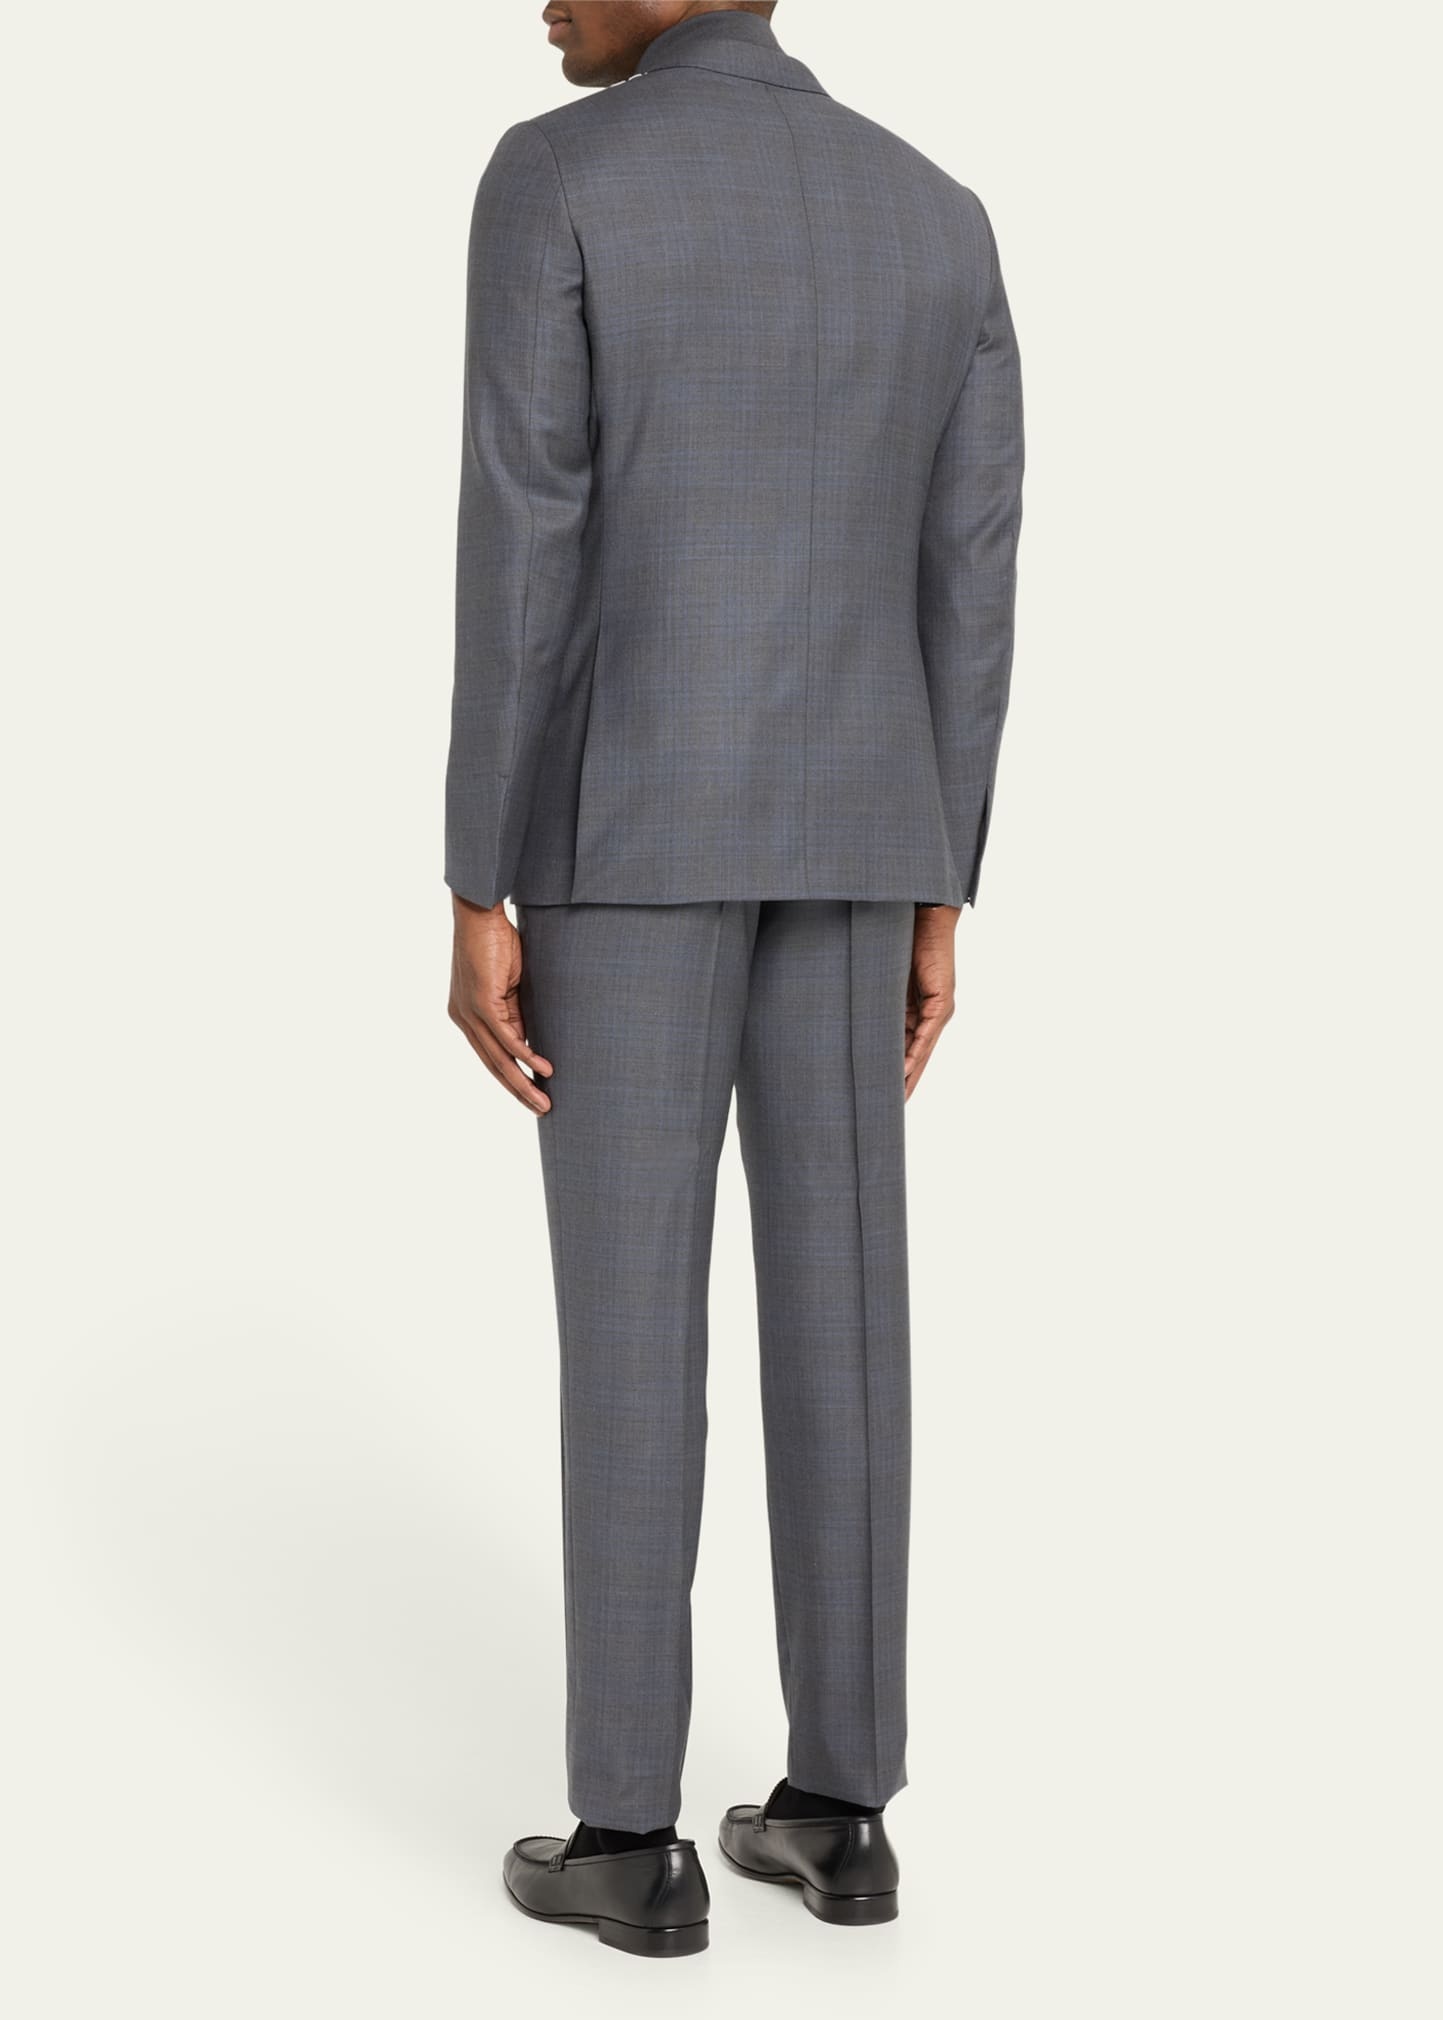 Men's Two-Tone Plaid Wool Suit - 3